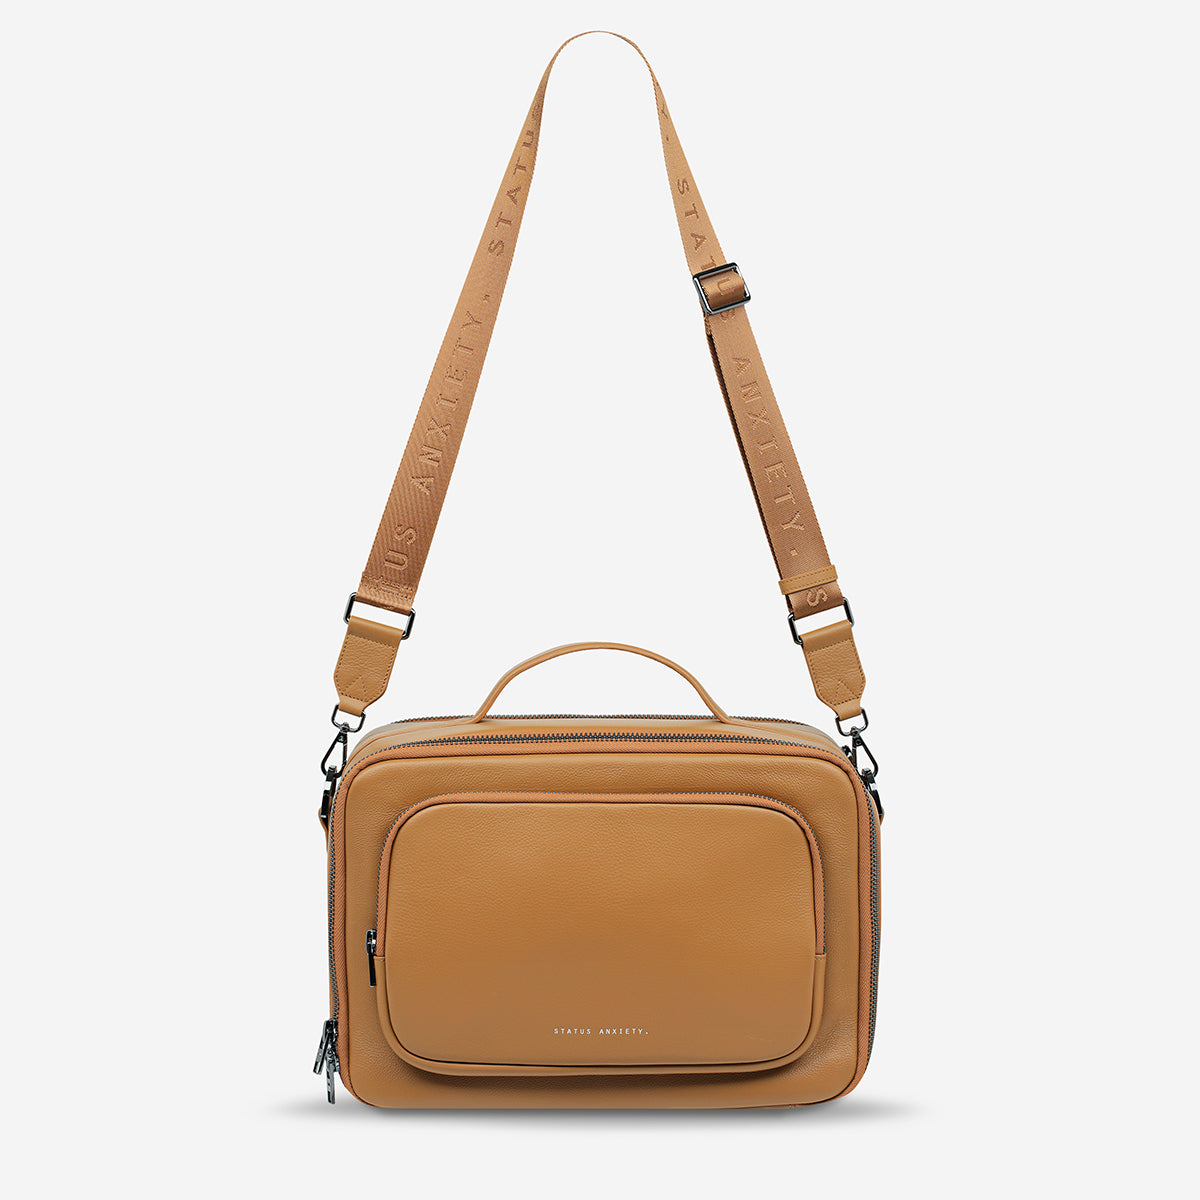 Soft Wide Strap Crossbody Bag for Women Camera Bag Shoulder Bag Crossbody  Purse | eBay